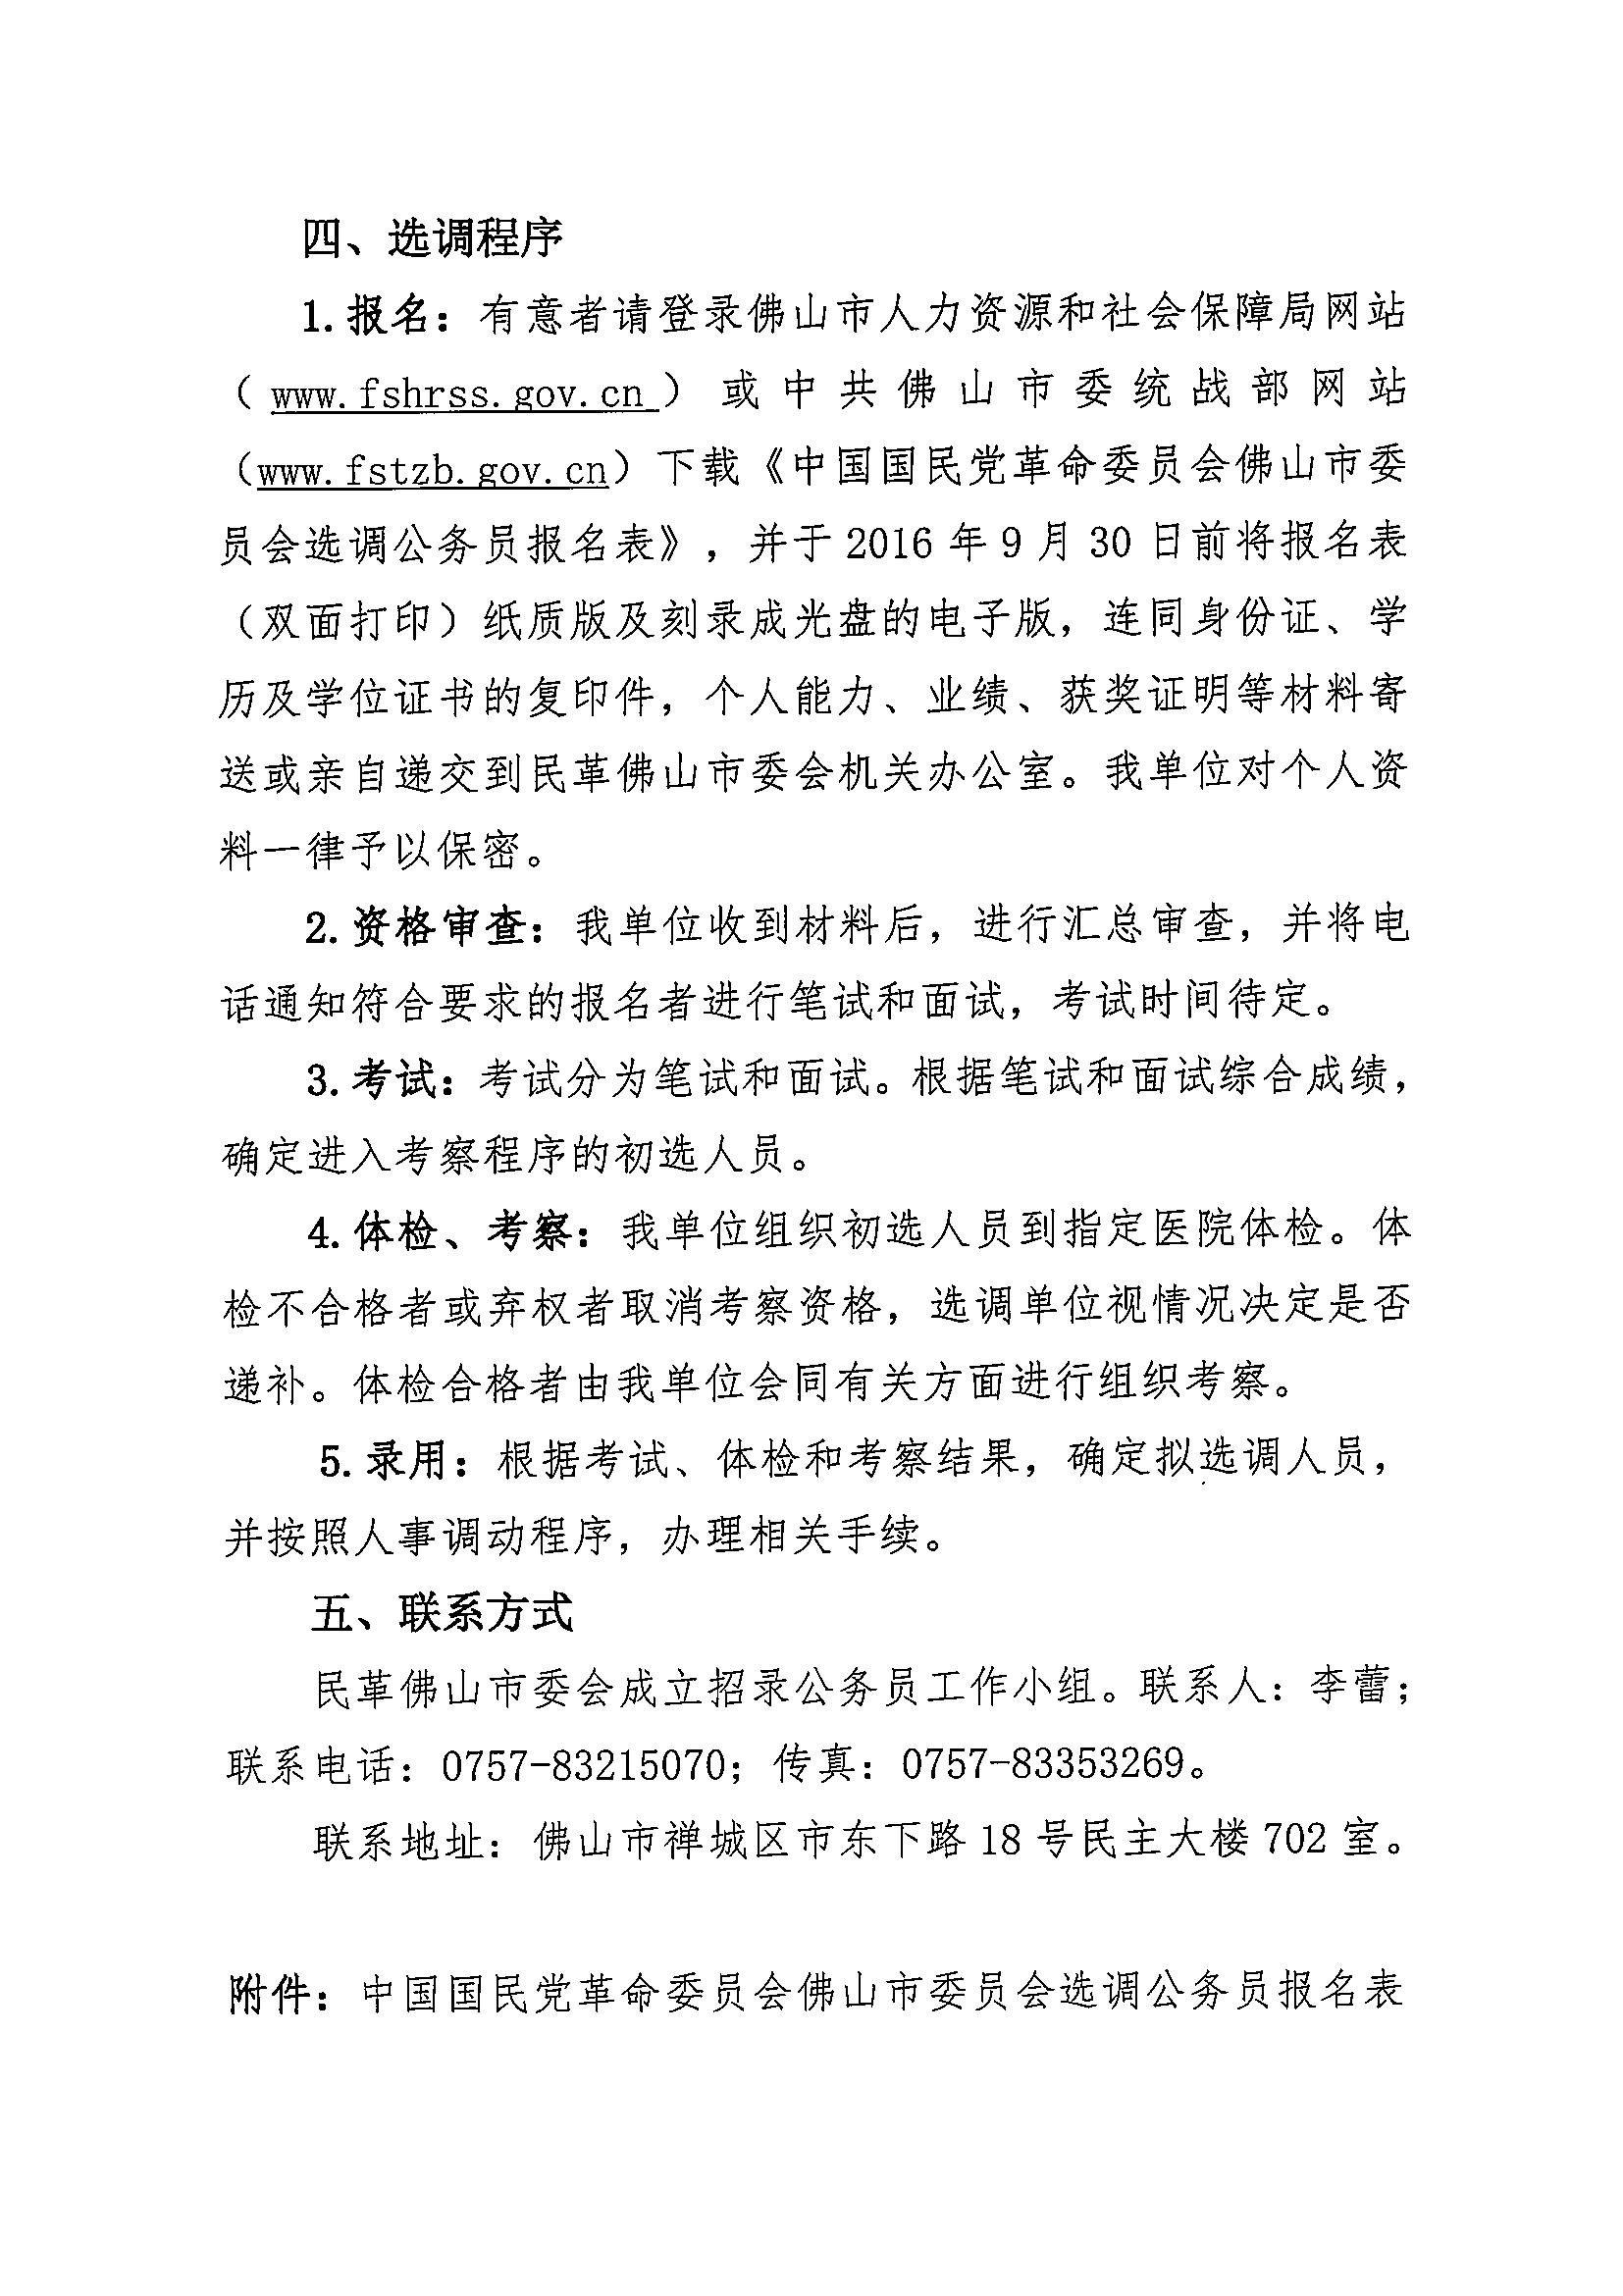 中国国民党革命委员会佛山市委员会选调公务员公告2.jpg